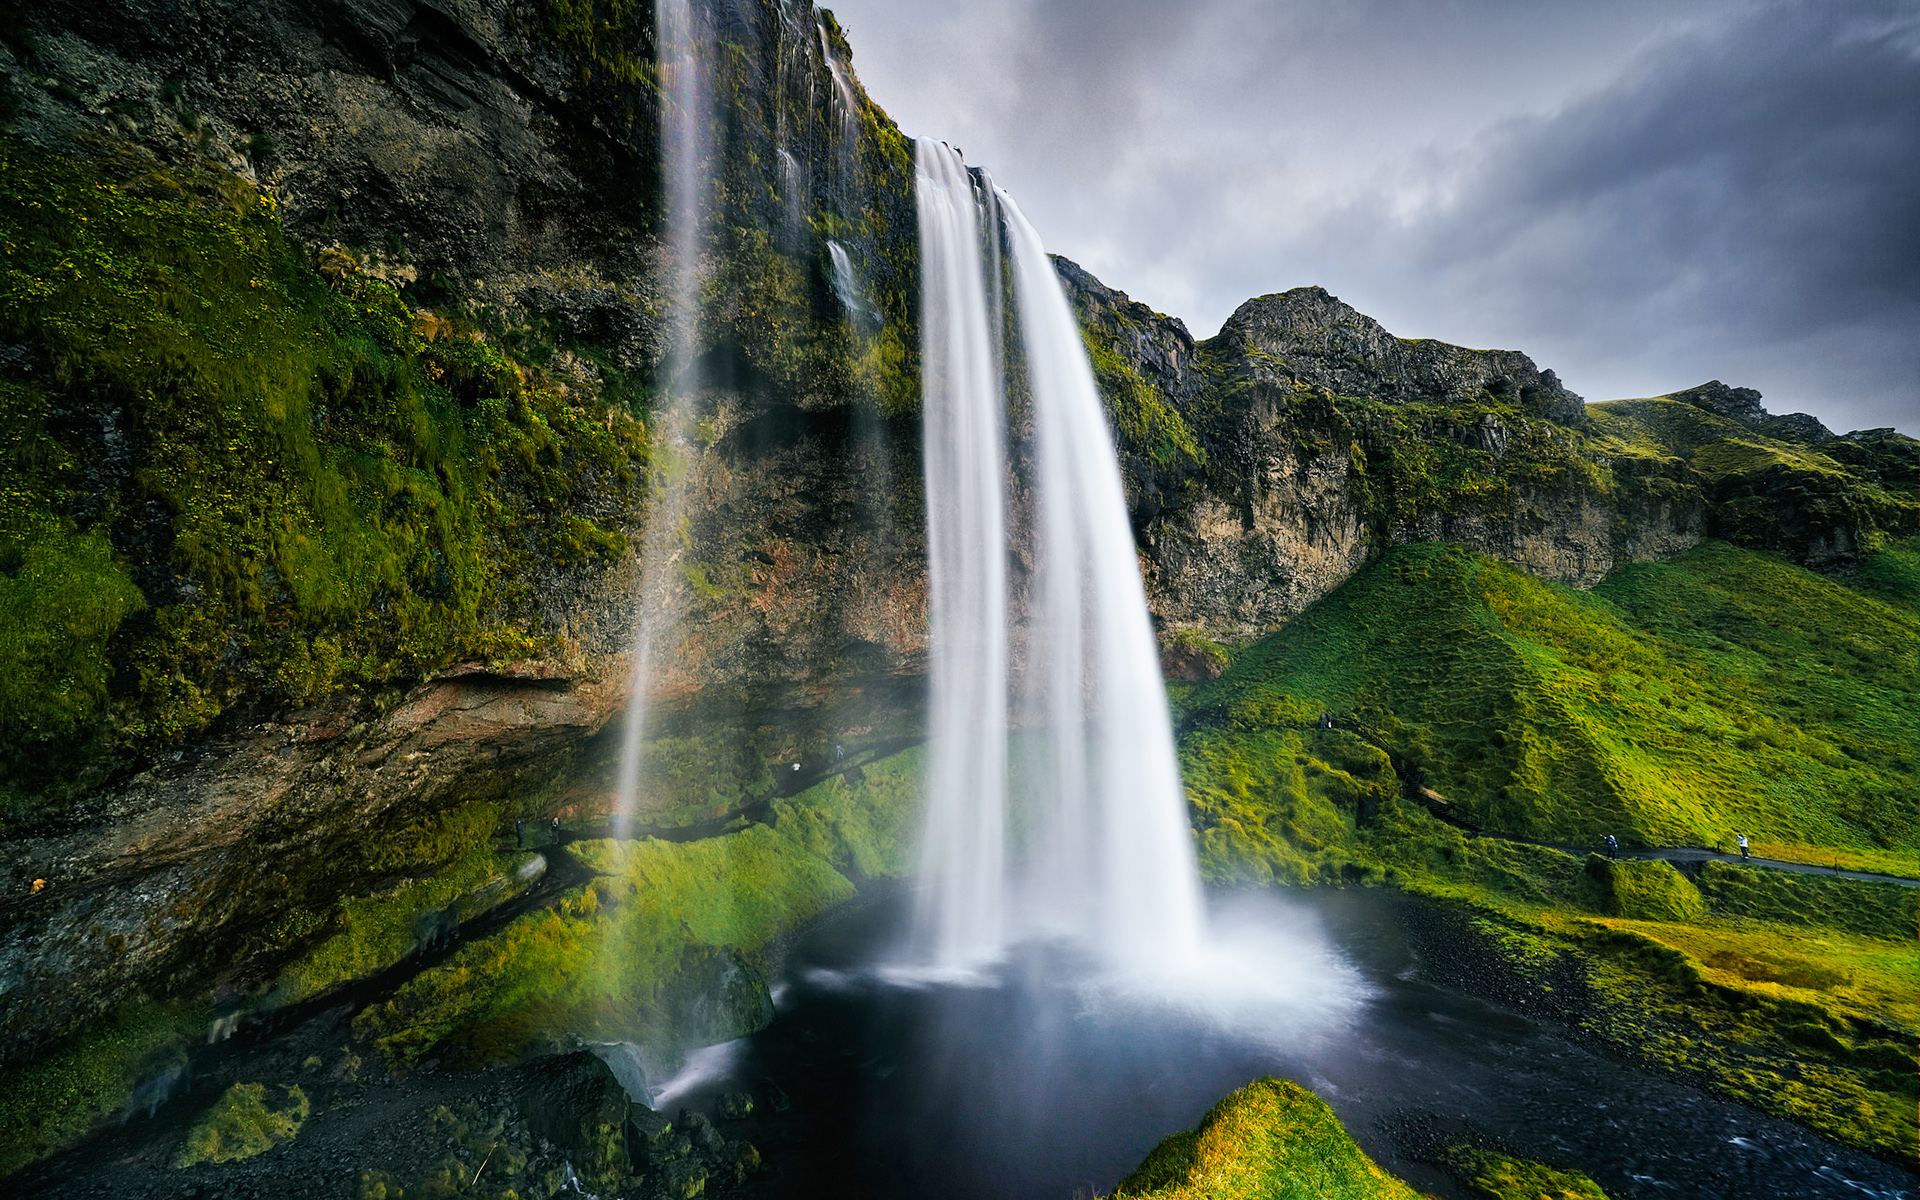 Seljalandsfoss waterfall. Photo by David Martinez Marinero.